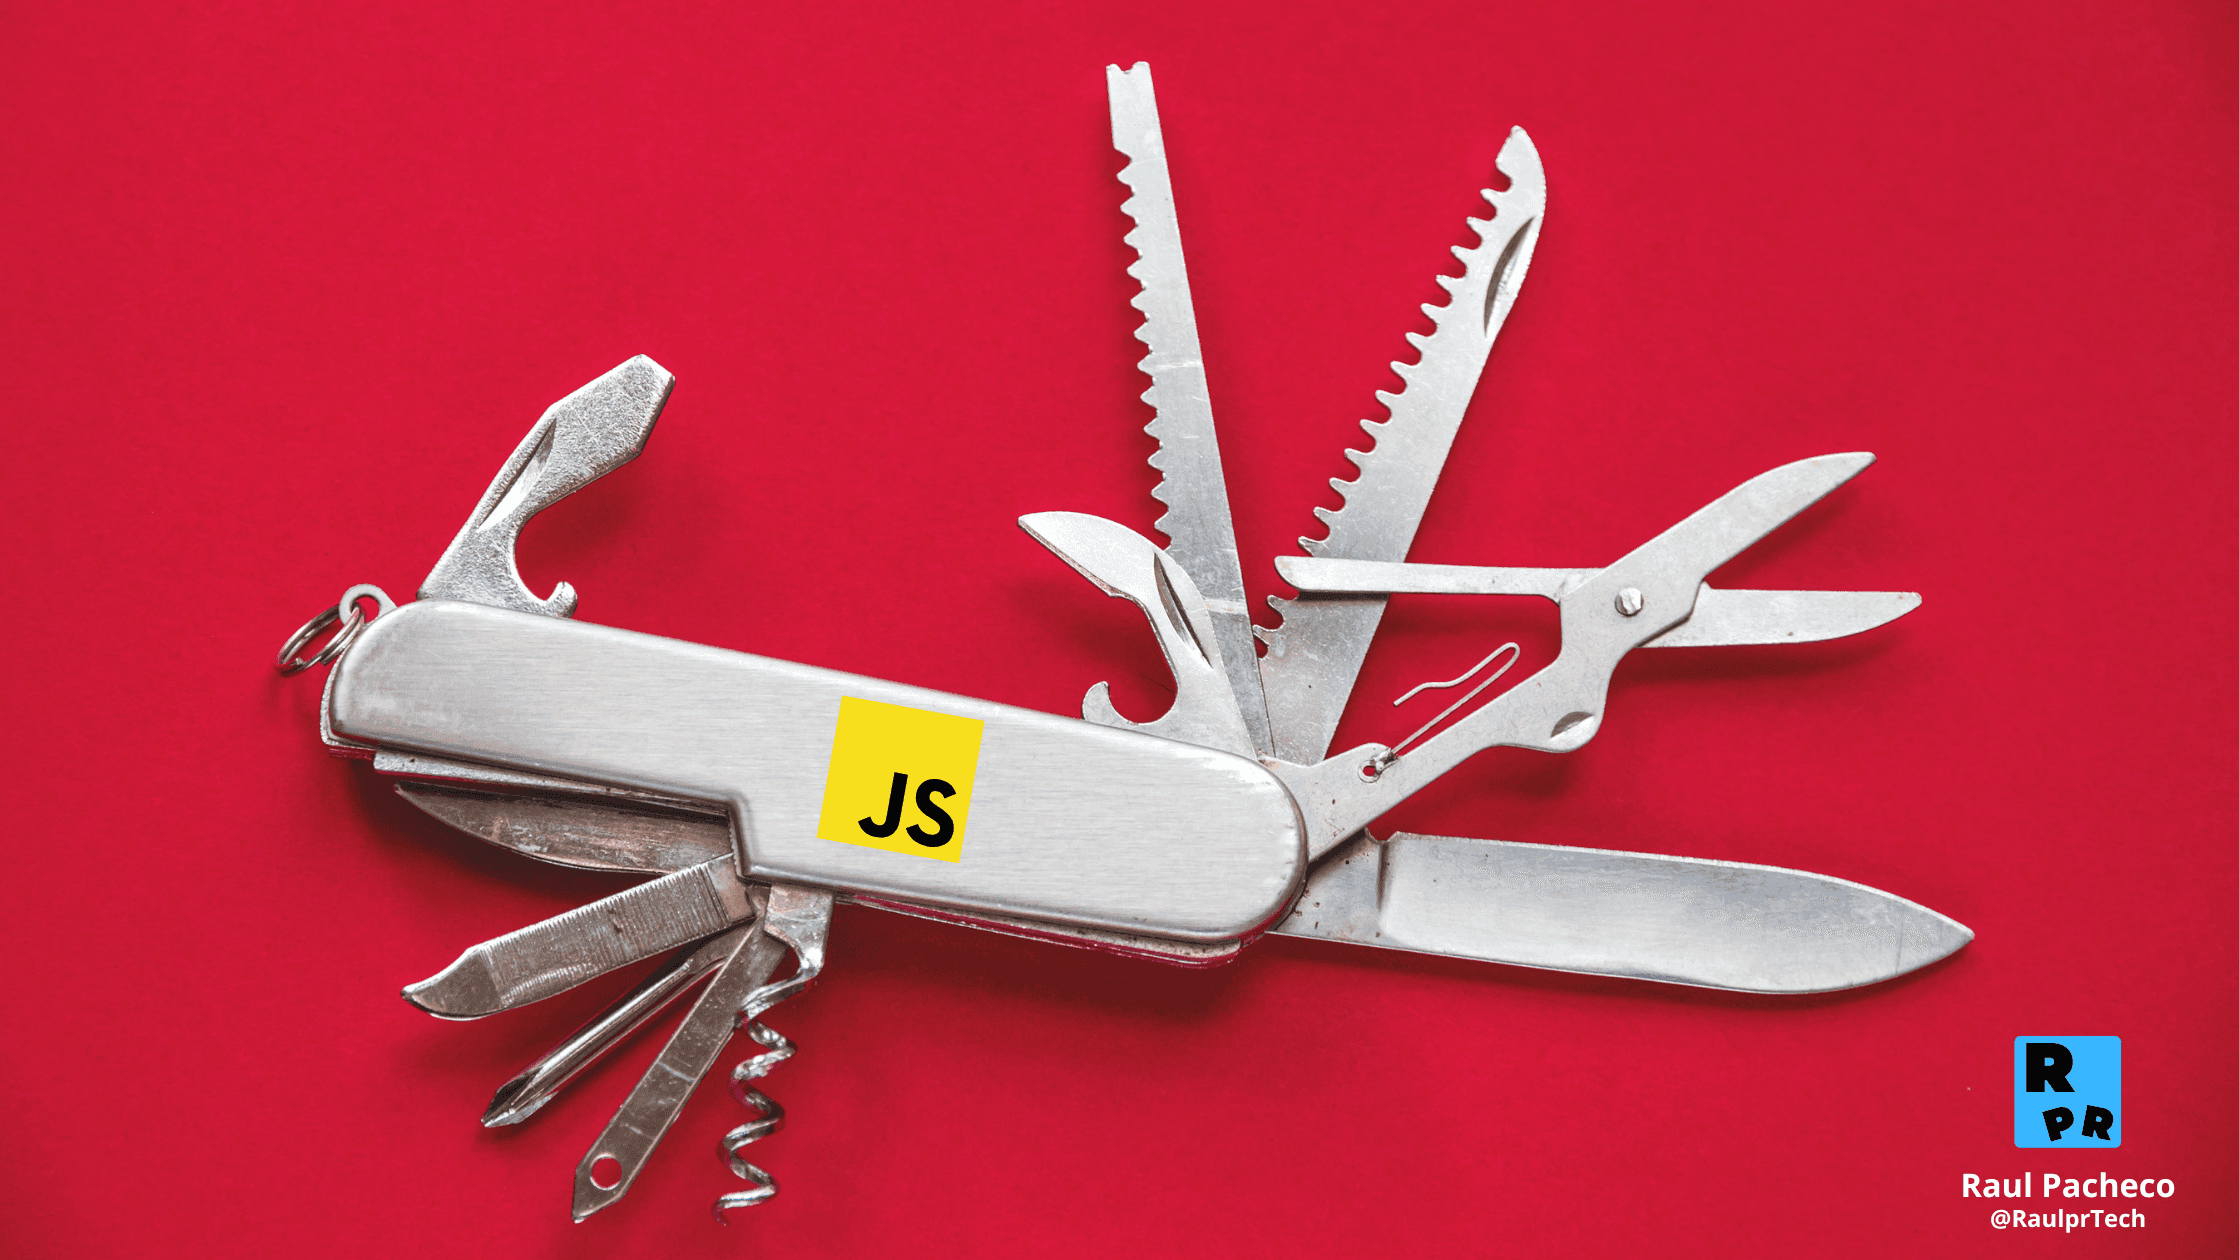 Versatilidad - Navaja suiza con el logo de JavaScript